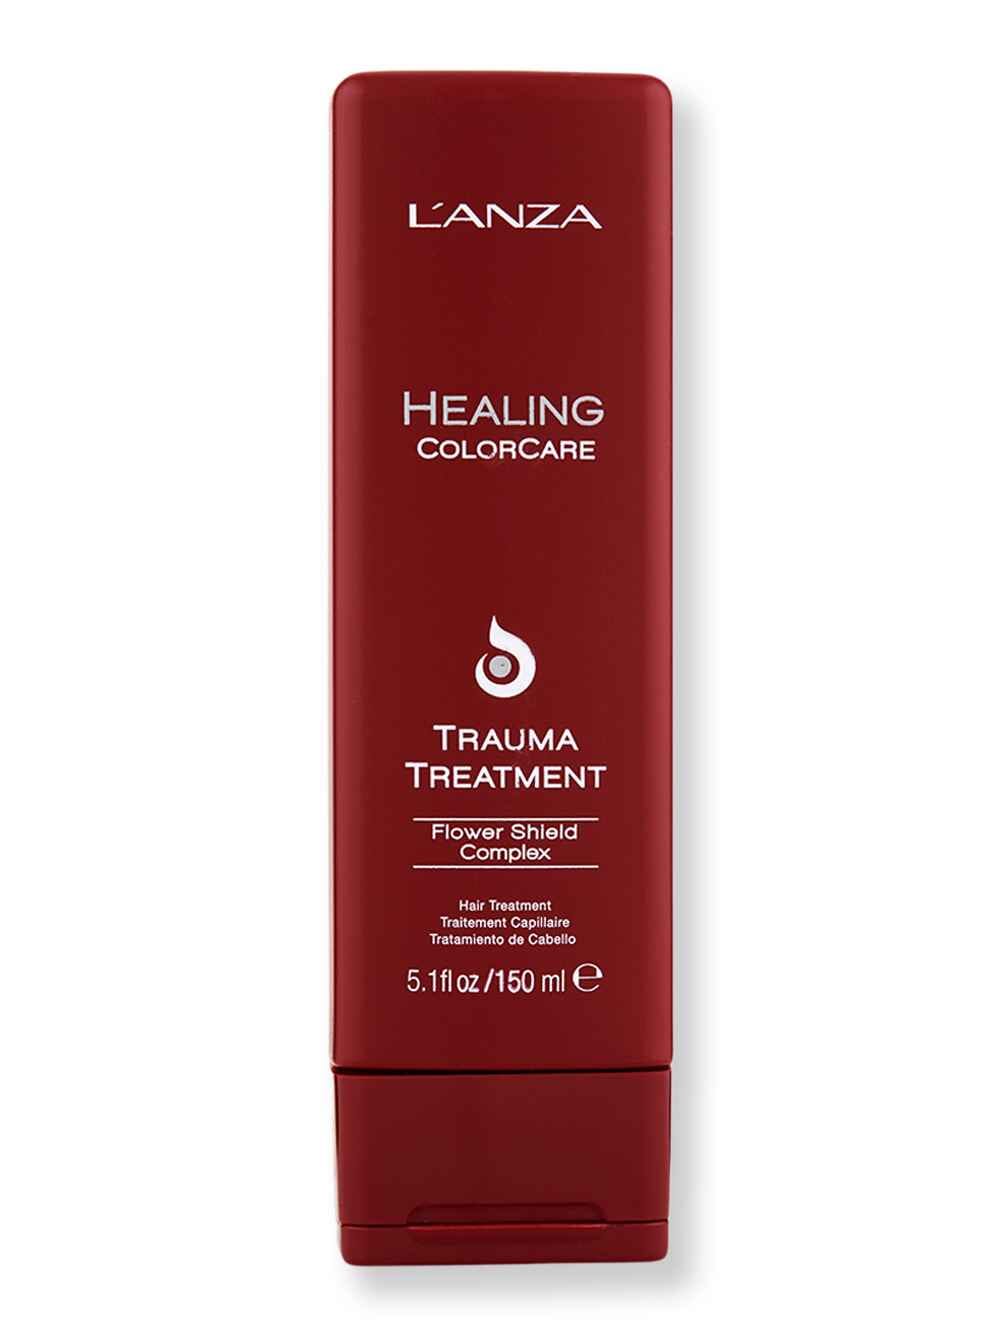 L'Anza L'Anza Healing Colorcare Trauma Treatment 150 ml Hair & Scalp Repair 